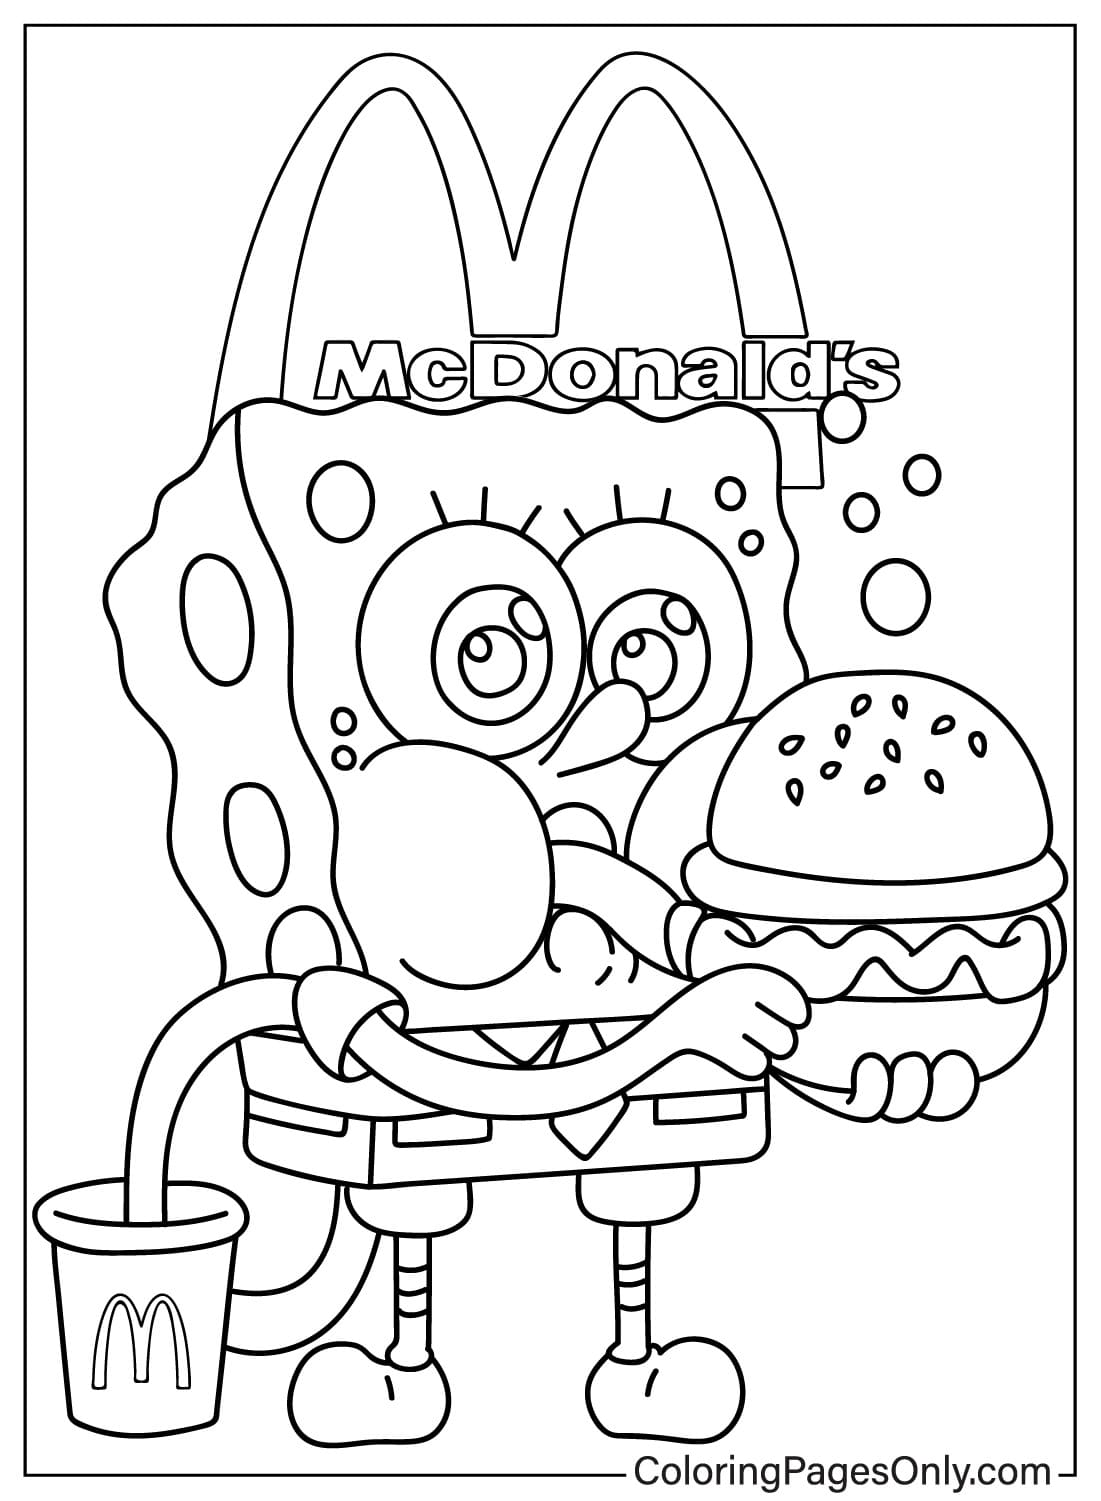 Página para colorir grátis do McDonalds do McDonald's